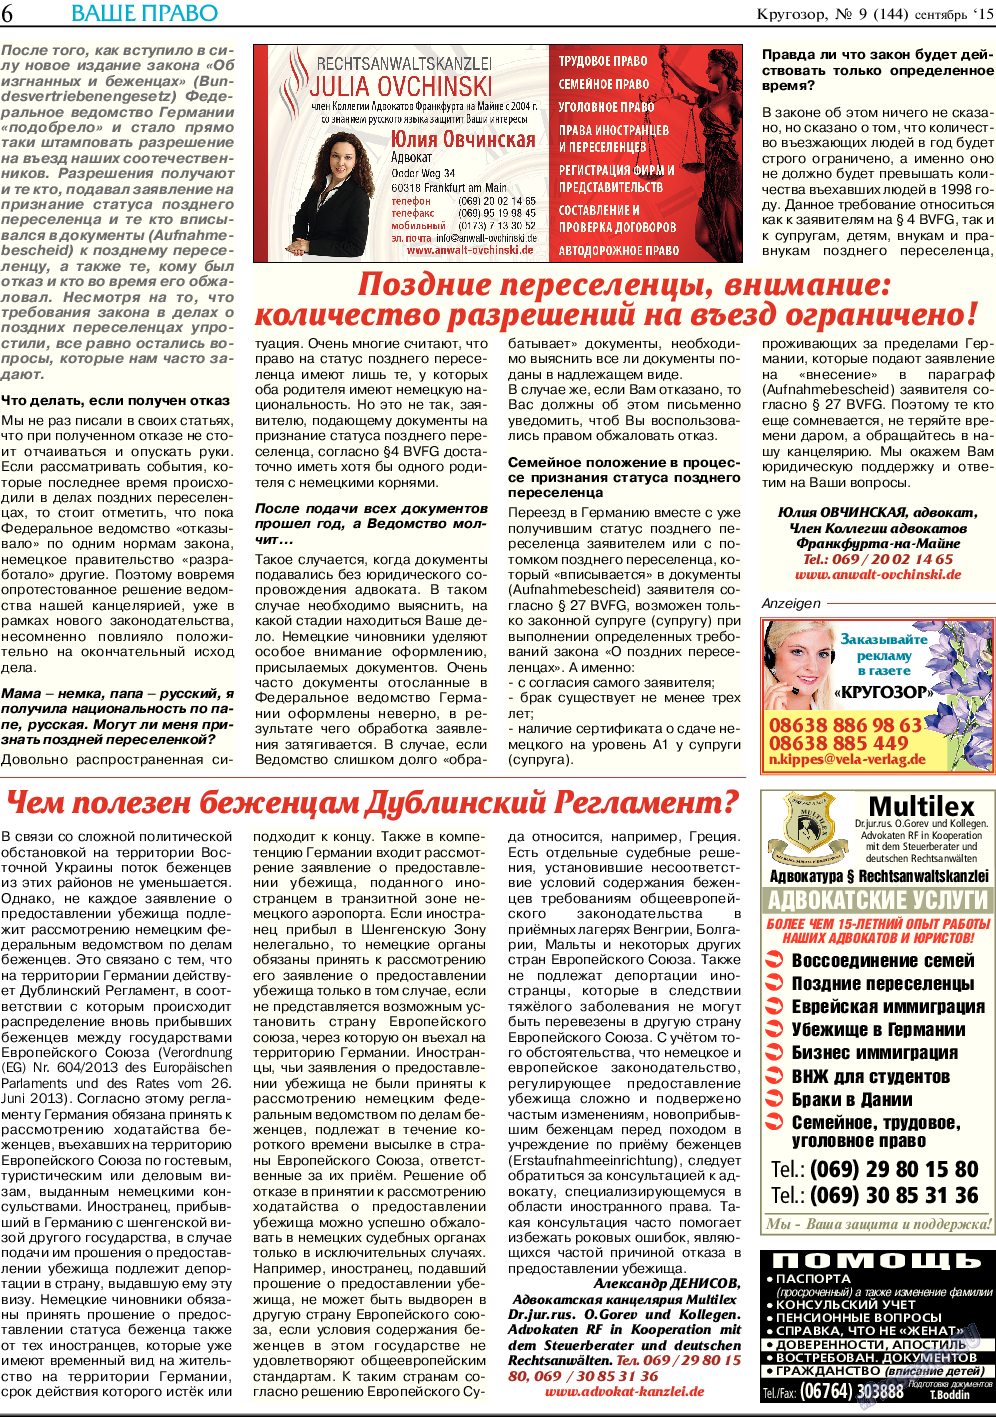 Кругозор, газета. 2015 №9 стр.6